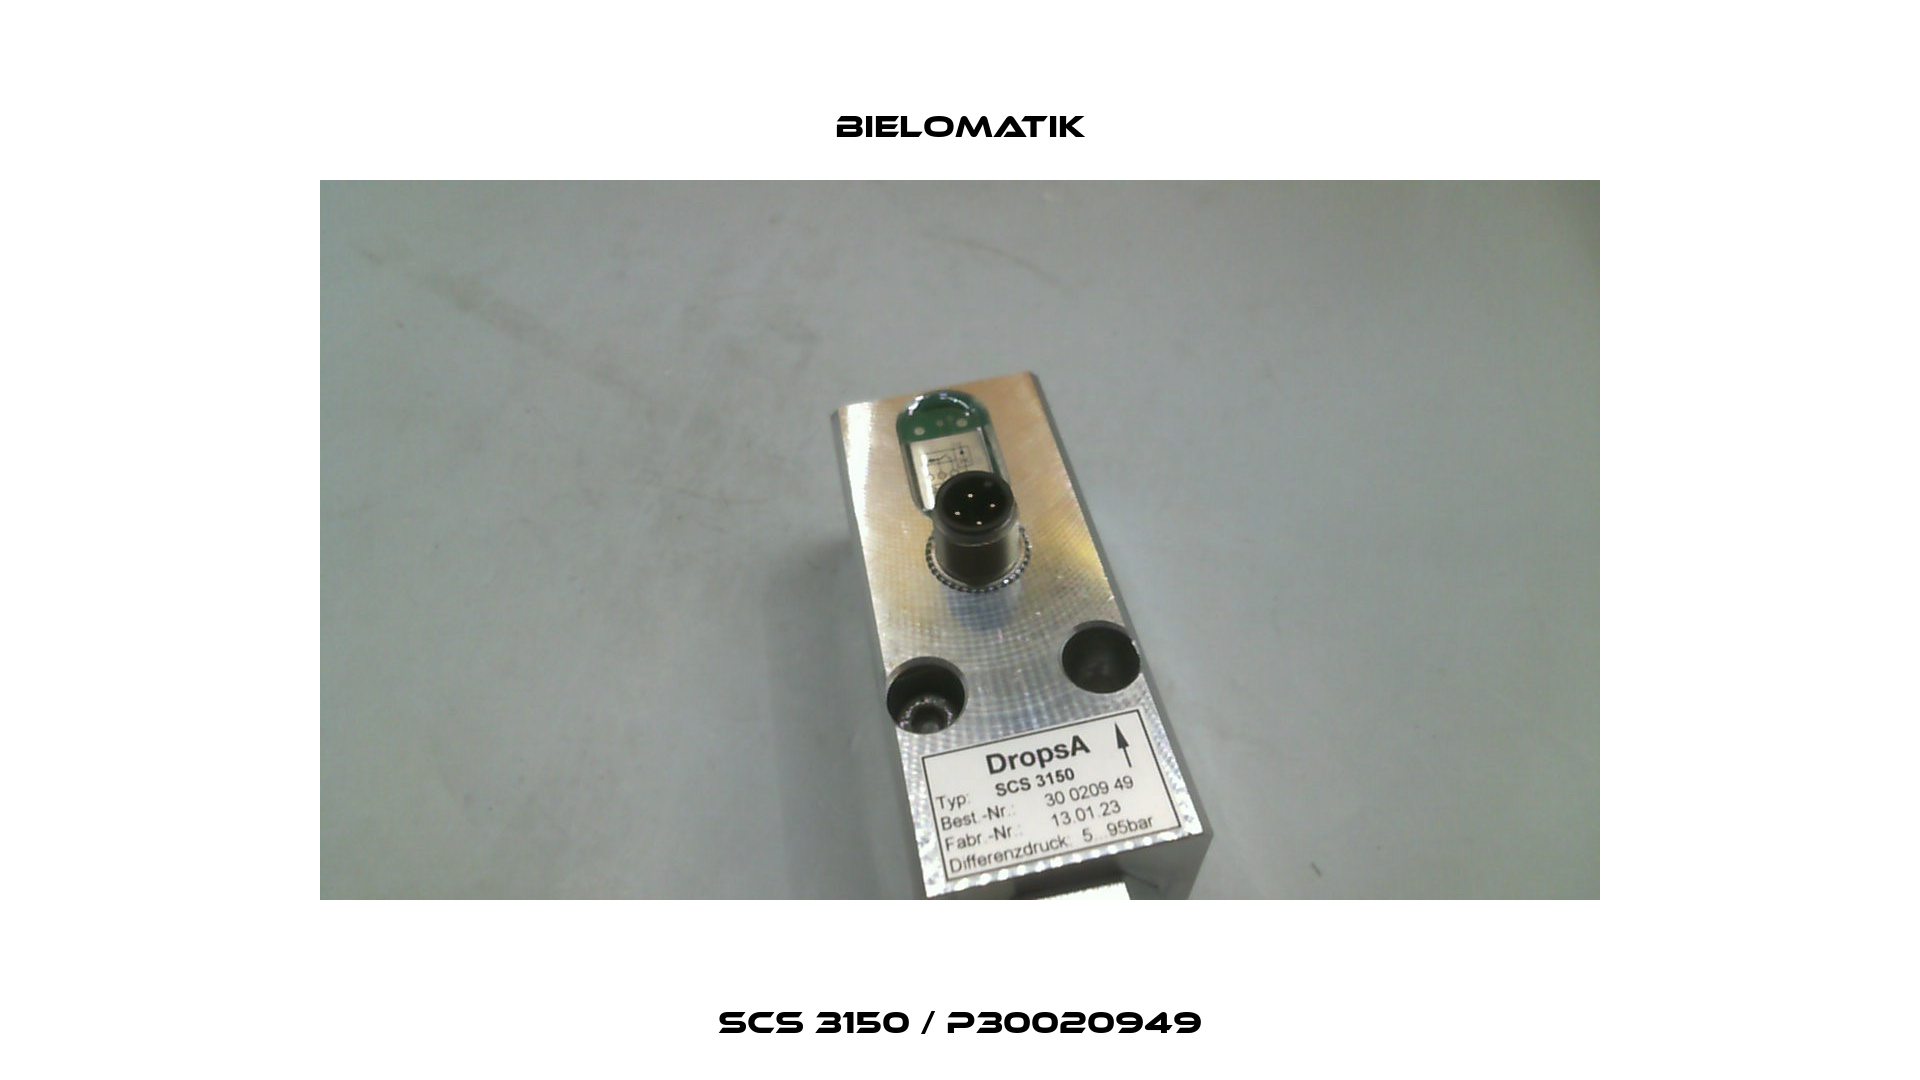 SCS 3150 / P30020949 Bielomatik